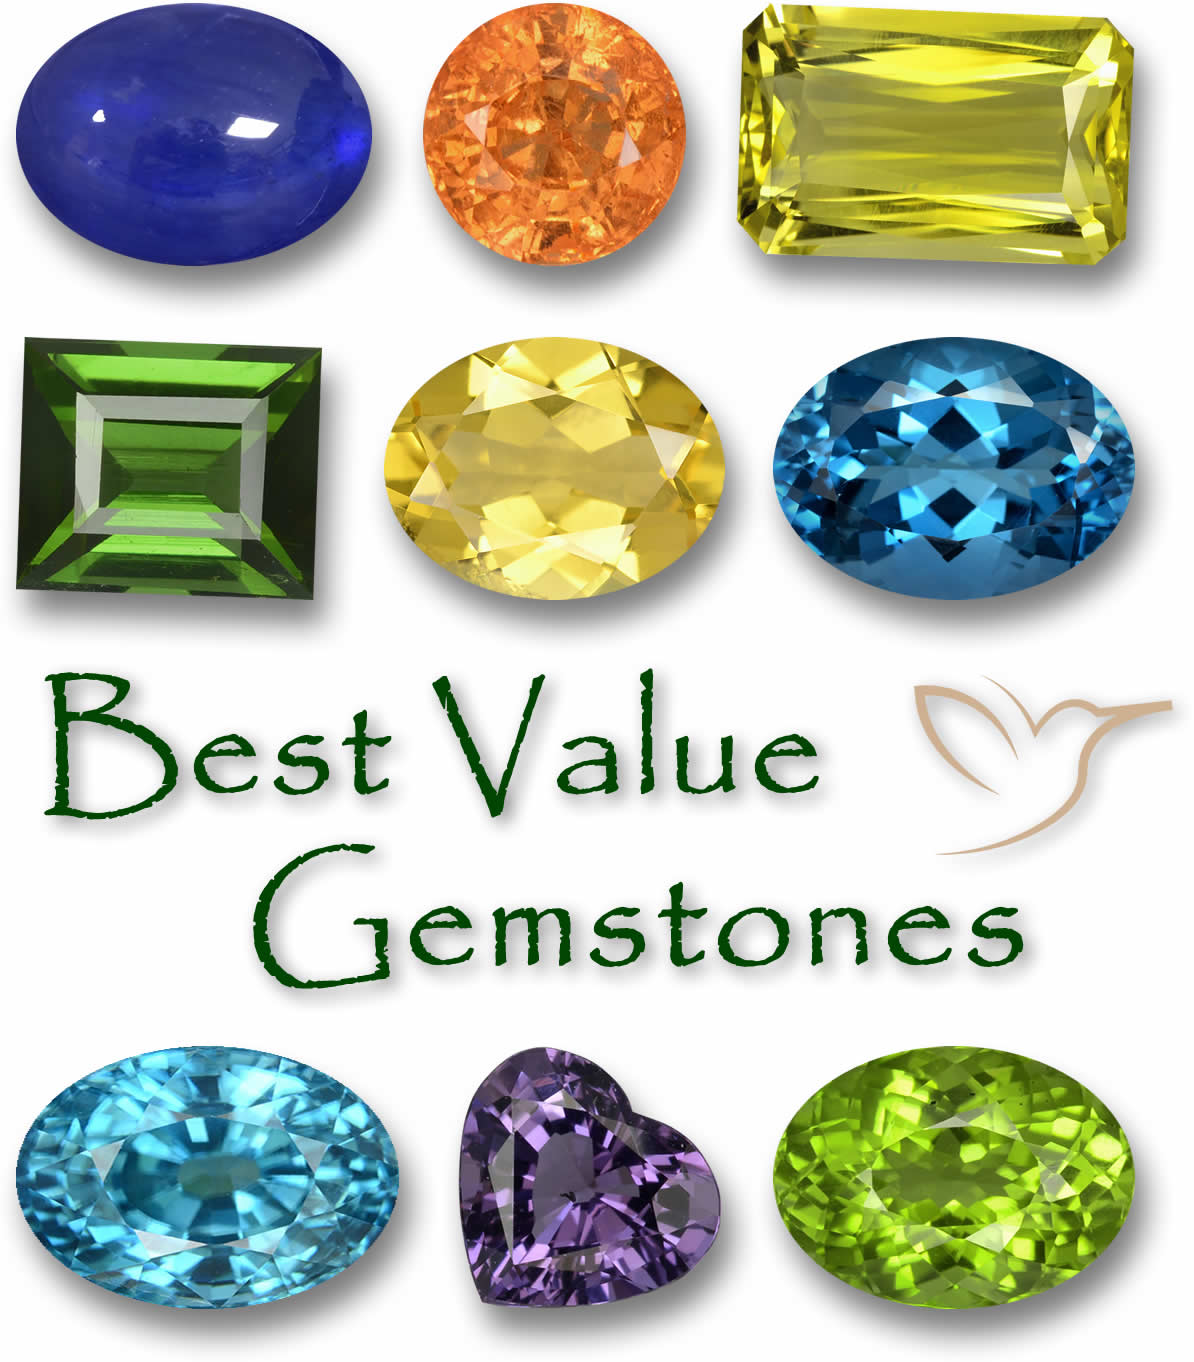 The Best Gem Stones to Invest in are - Economagic